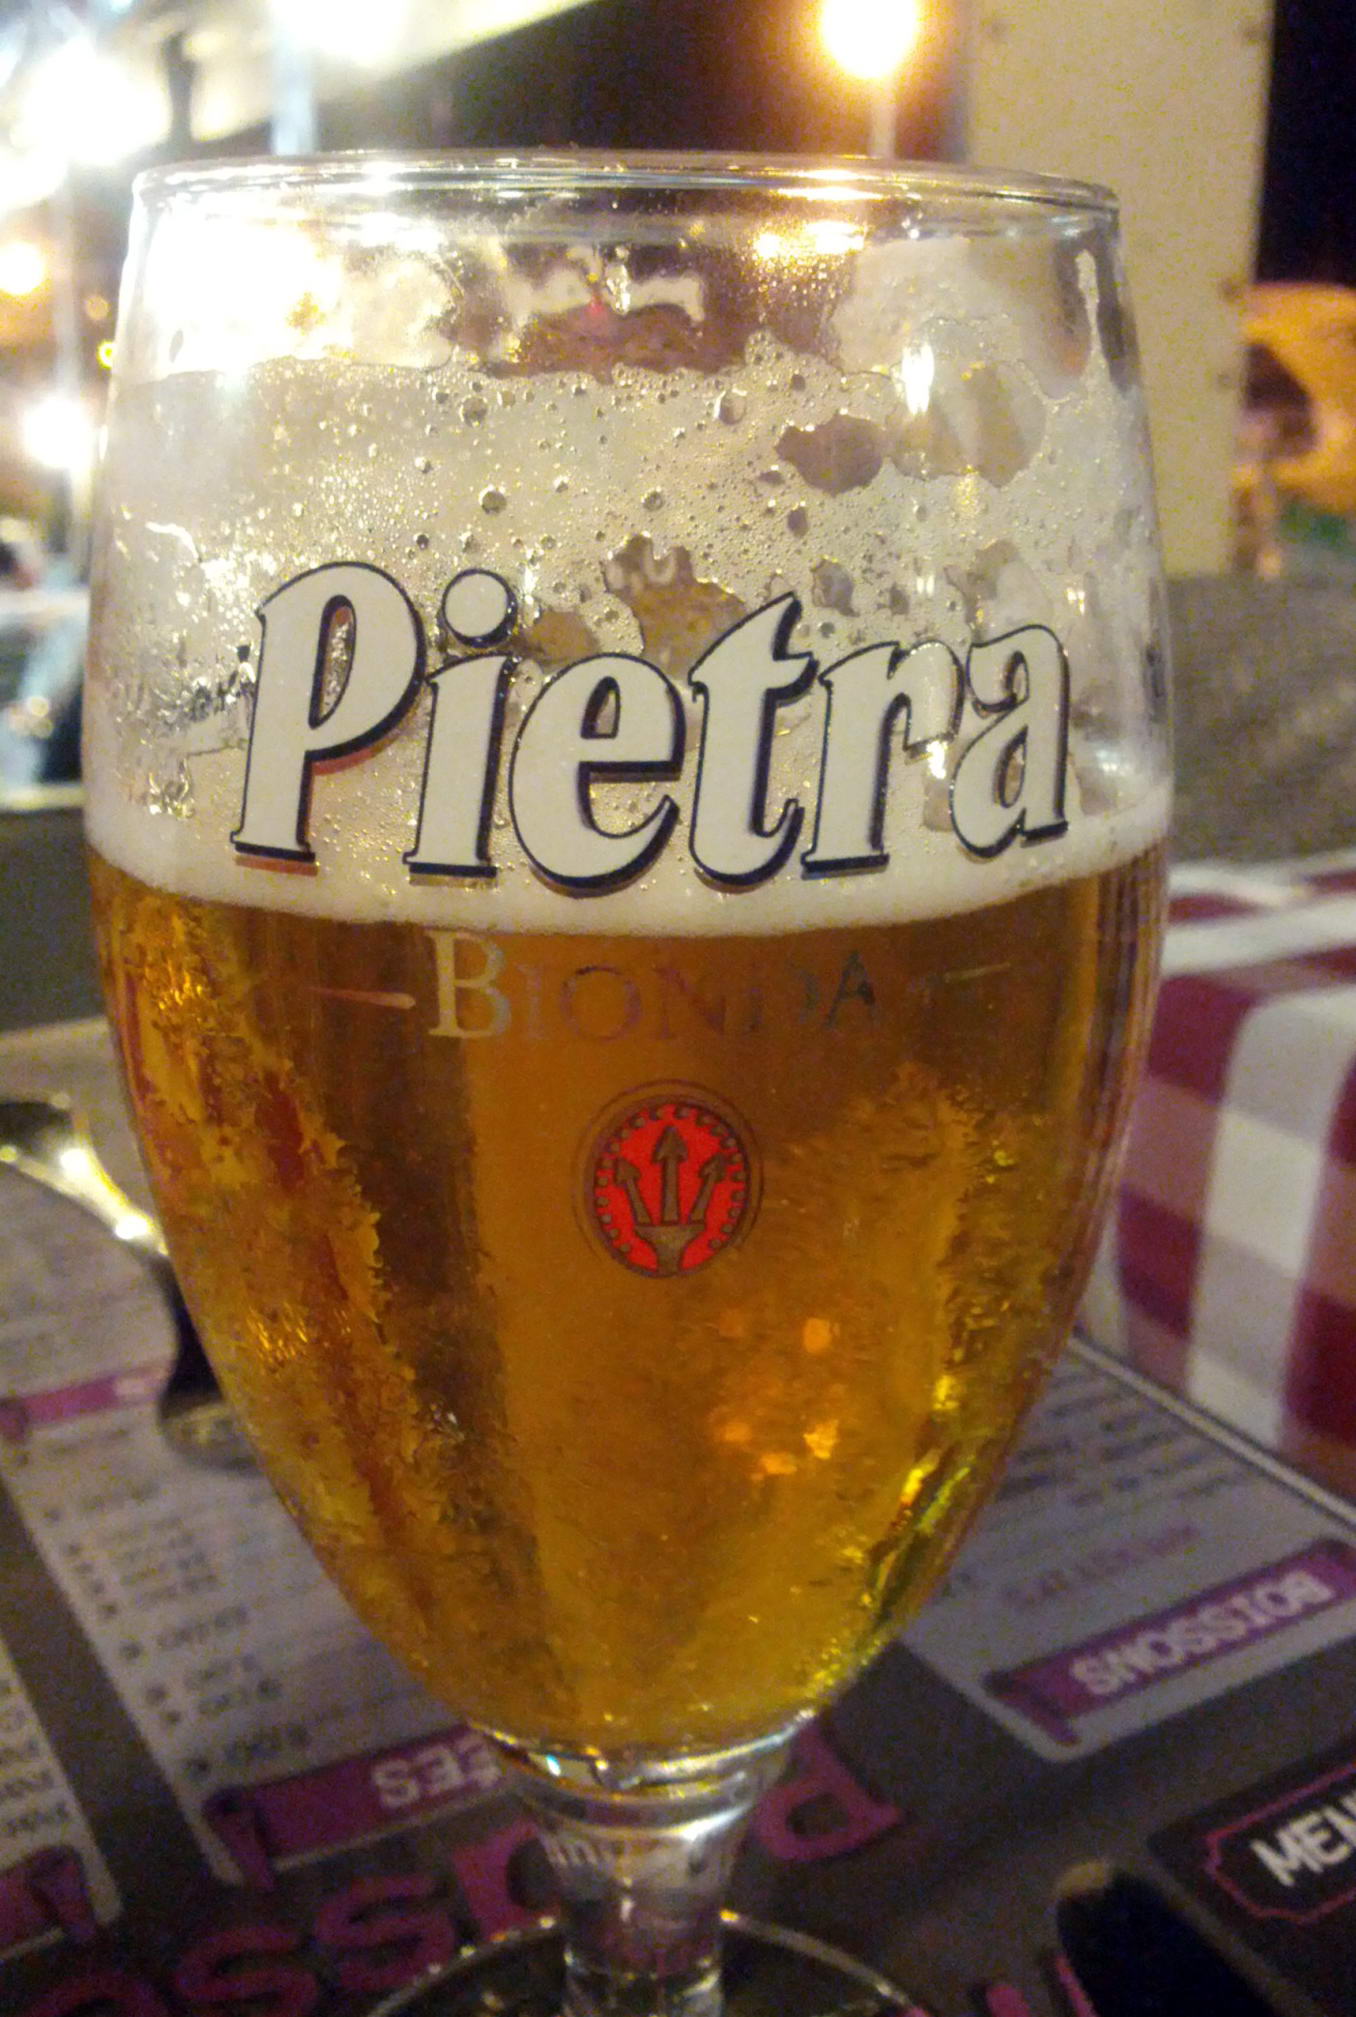 Birra alle castagne, Pietra, A biera corsa